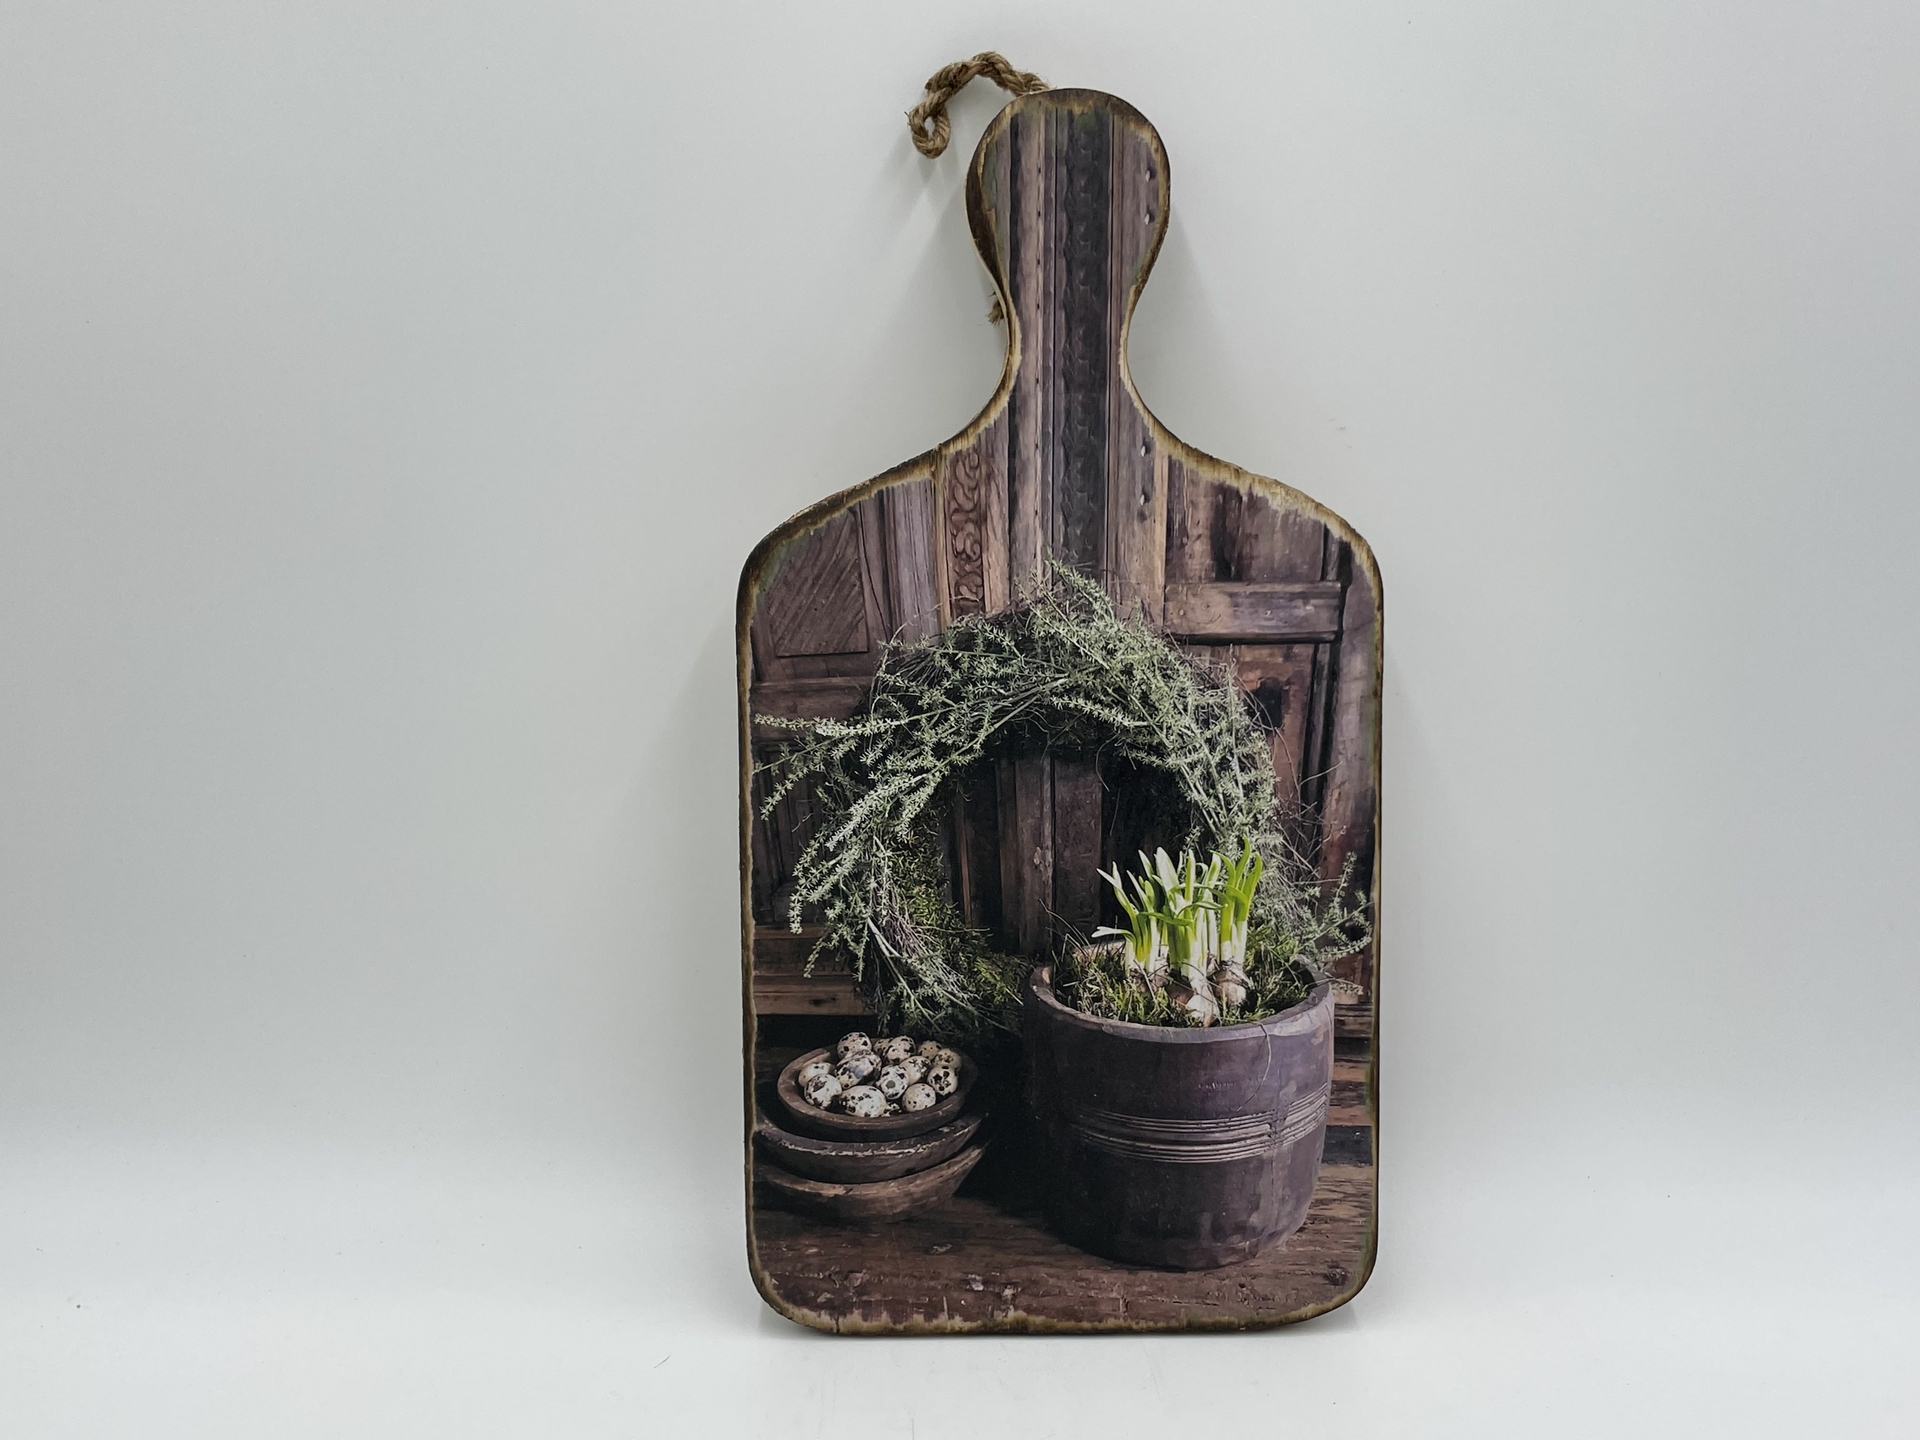 Decoratie broodplank met print krans bloempot & kwarteleitjes 35,5 cm x 18,5 cm touw maat M | Stoer & Sober | 431499 | Home Sweet Home